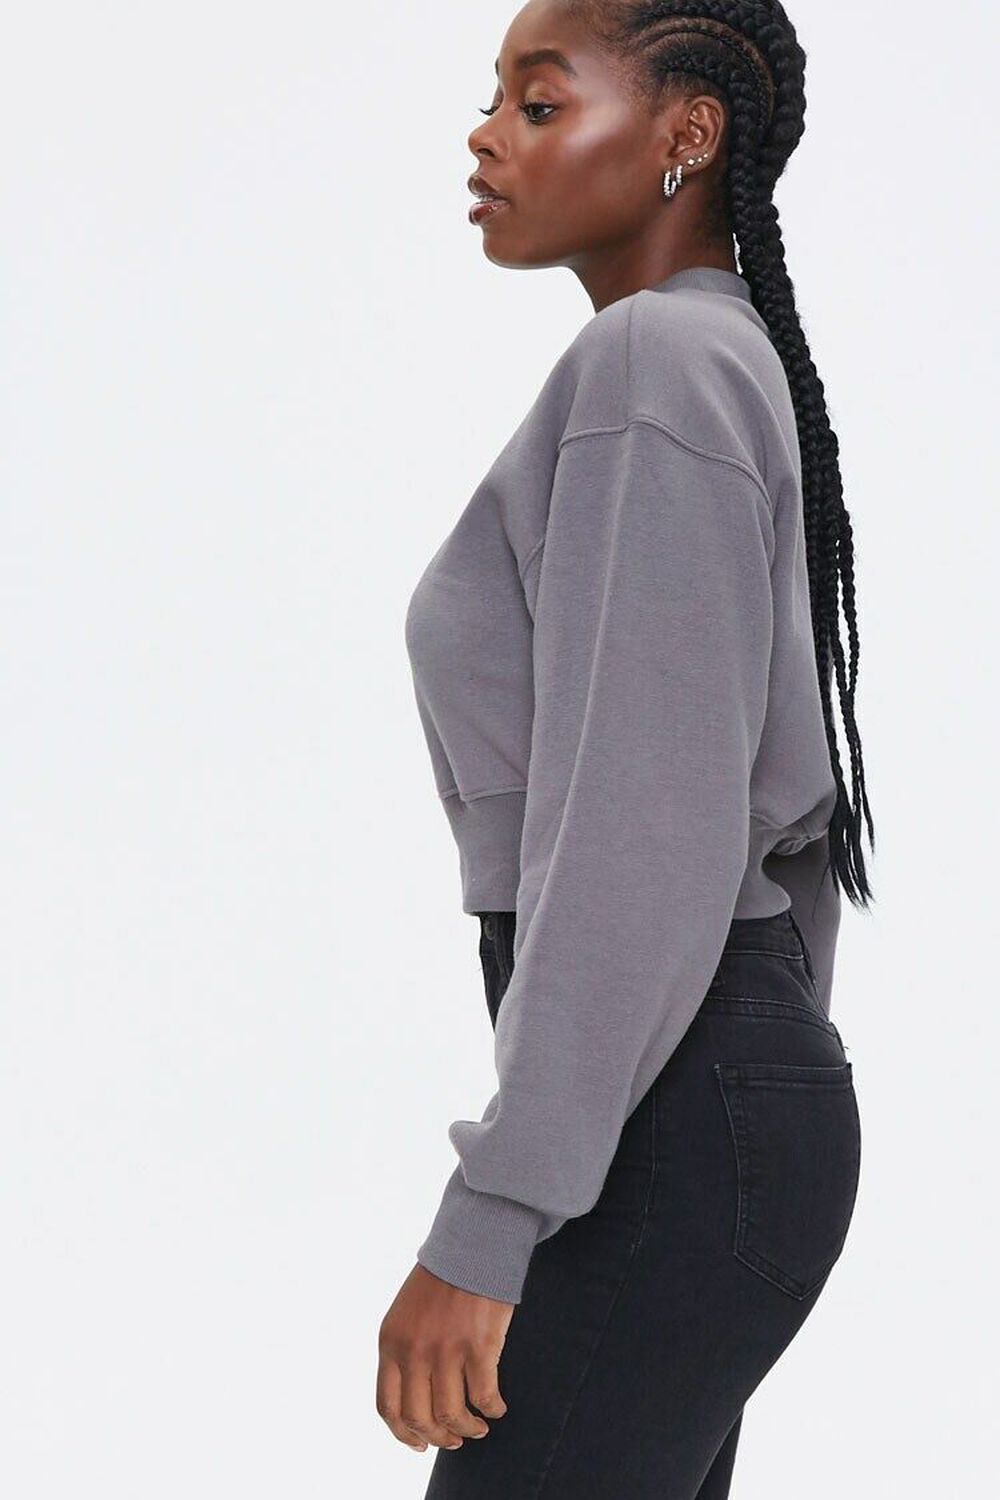 CHARCOAL Fleece Drop-Sleeve Sweatshirt, image 2